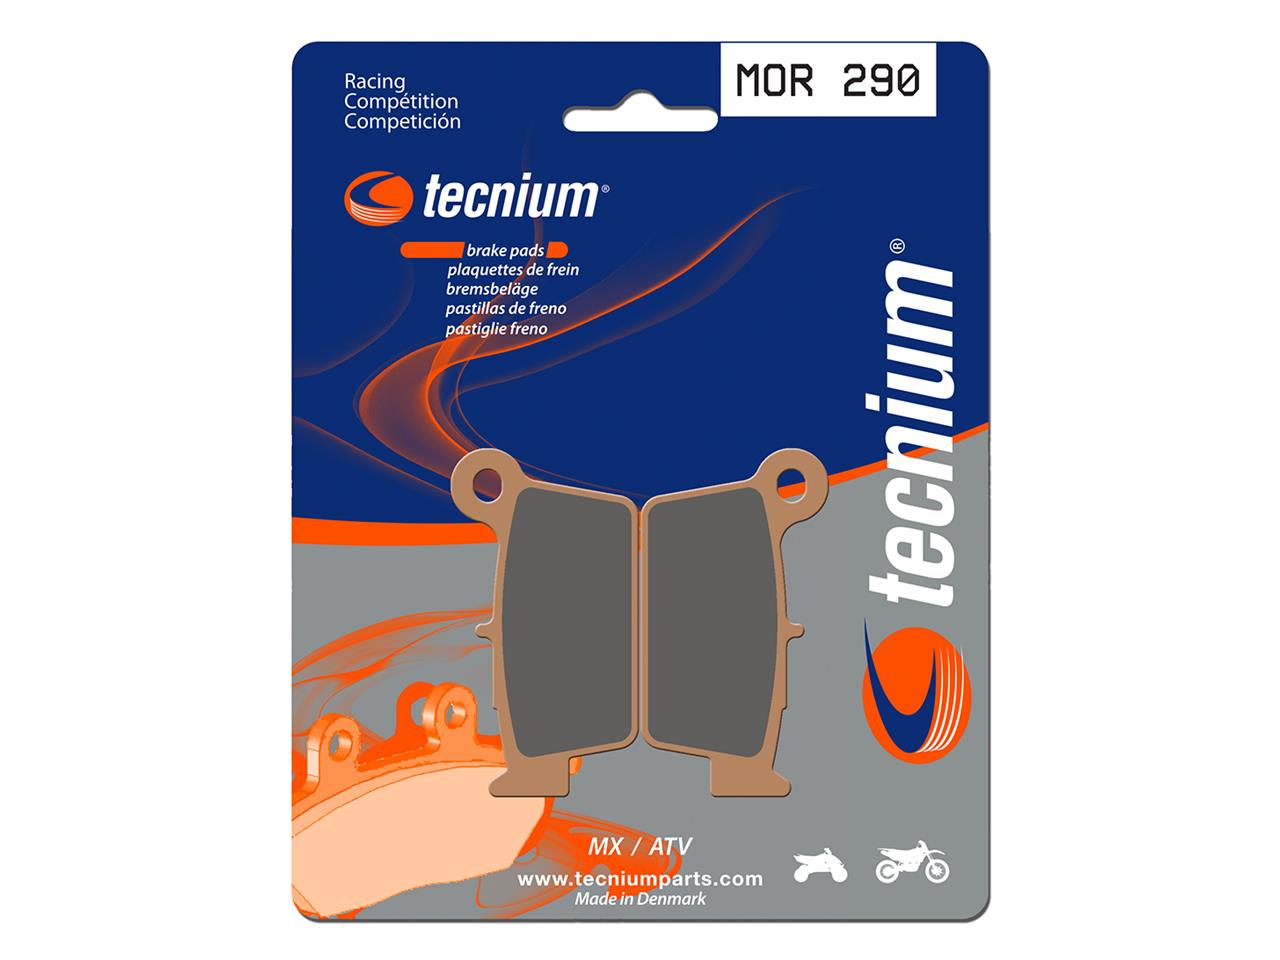 Plaquettes de frein métal fritté marque Tecnium Racing : MOR290 | Compatible Motocross, Moto